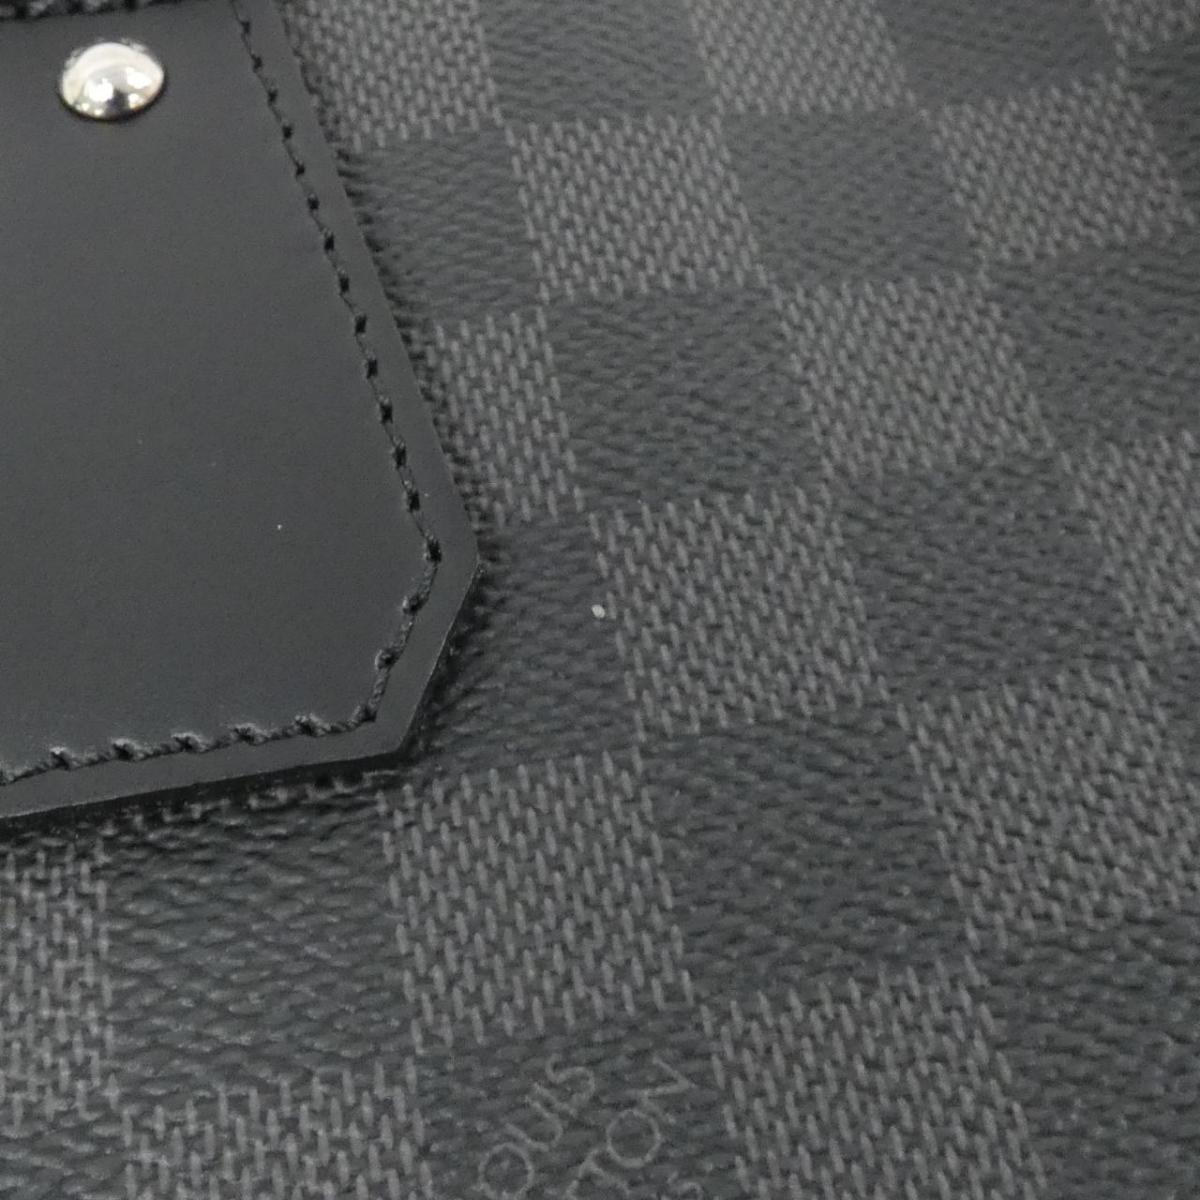 Louis Vuitton Damier Graphite Garment Cover N48230 Bag